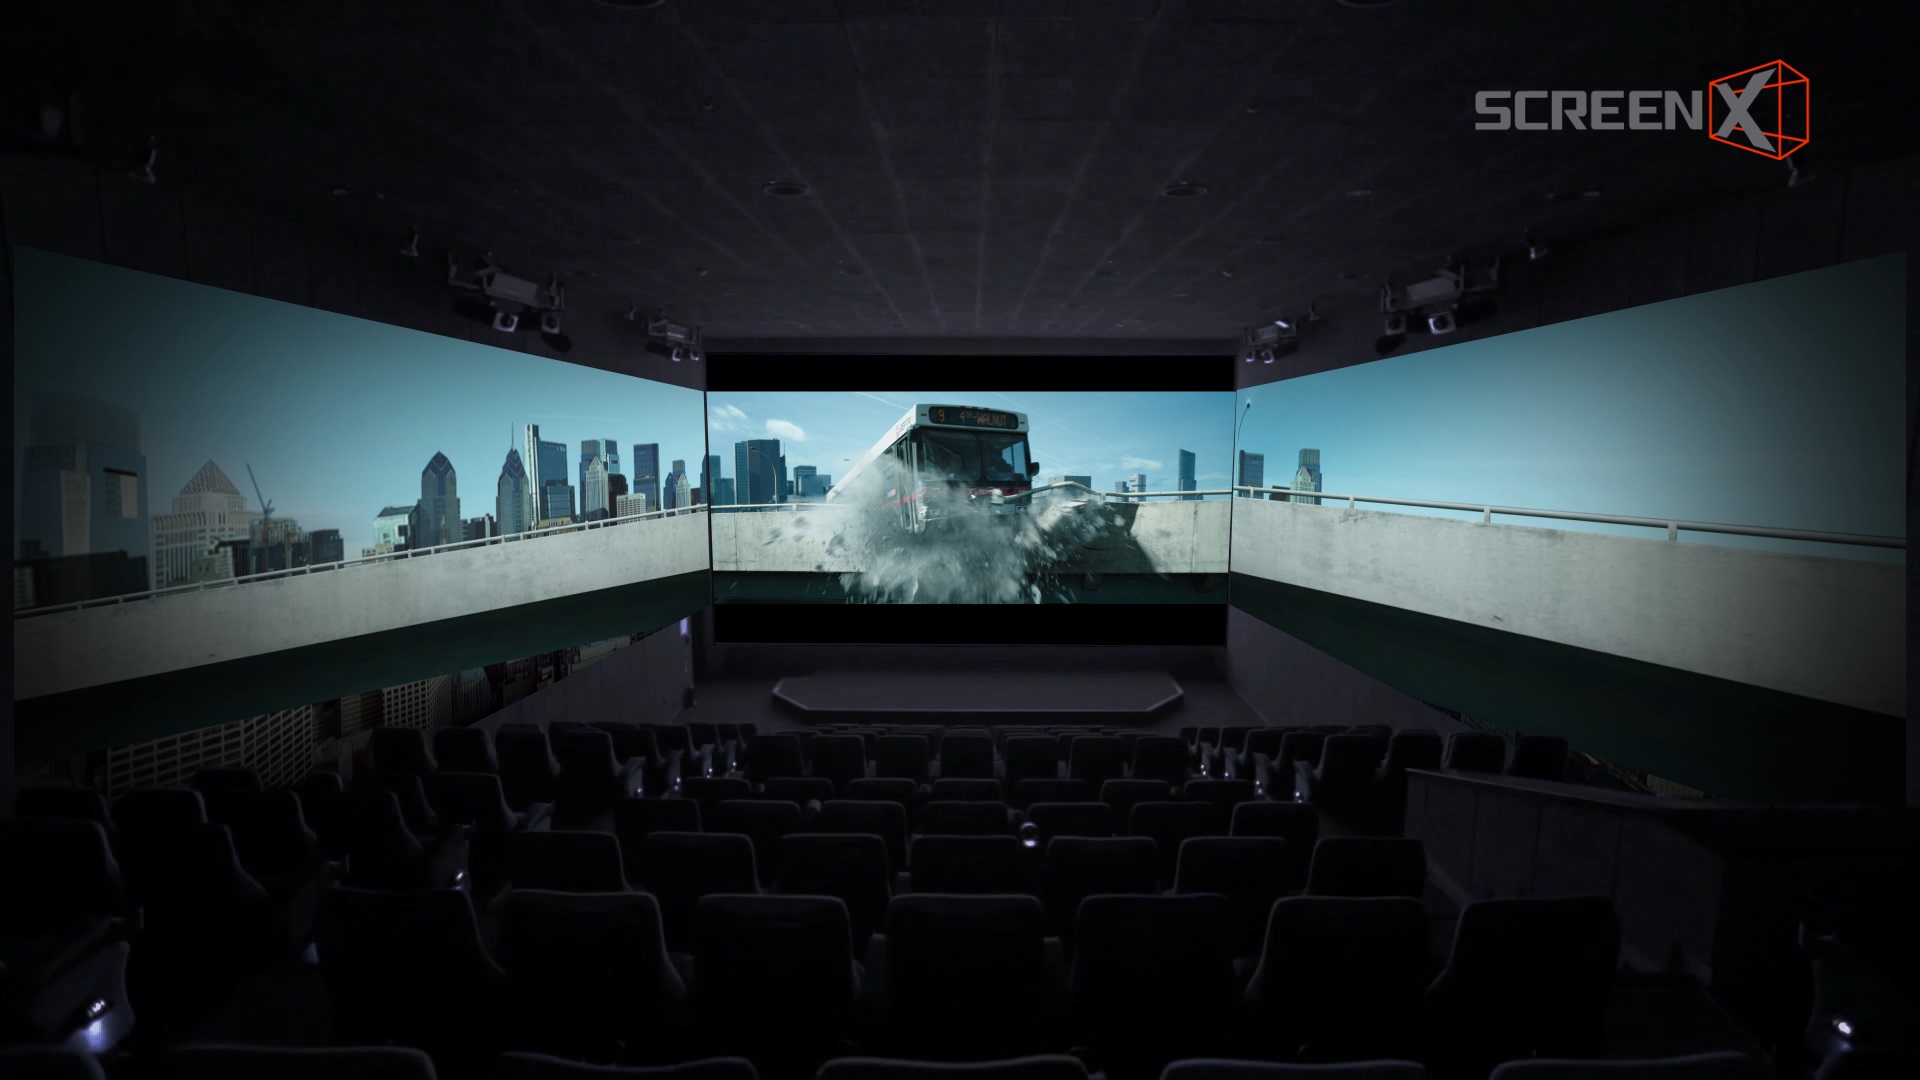 أضخم الأفلام المرتقبة لعام 2019 على شاشة ScreenX في ريل سينما دبي